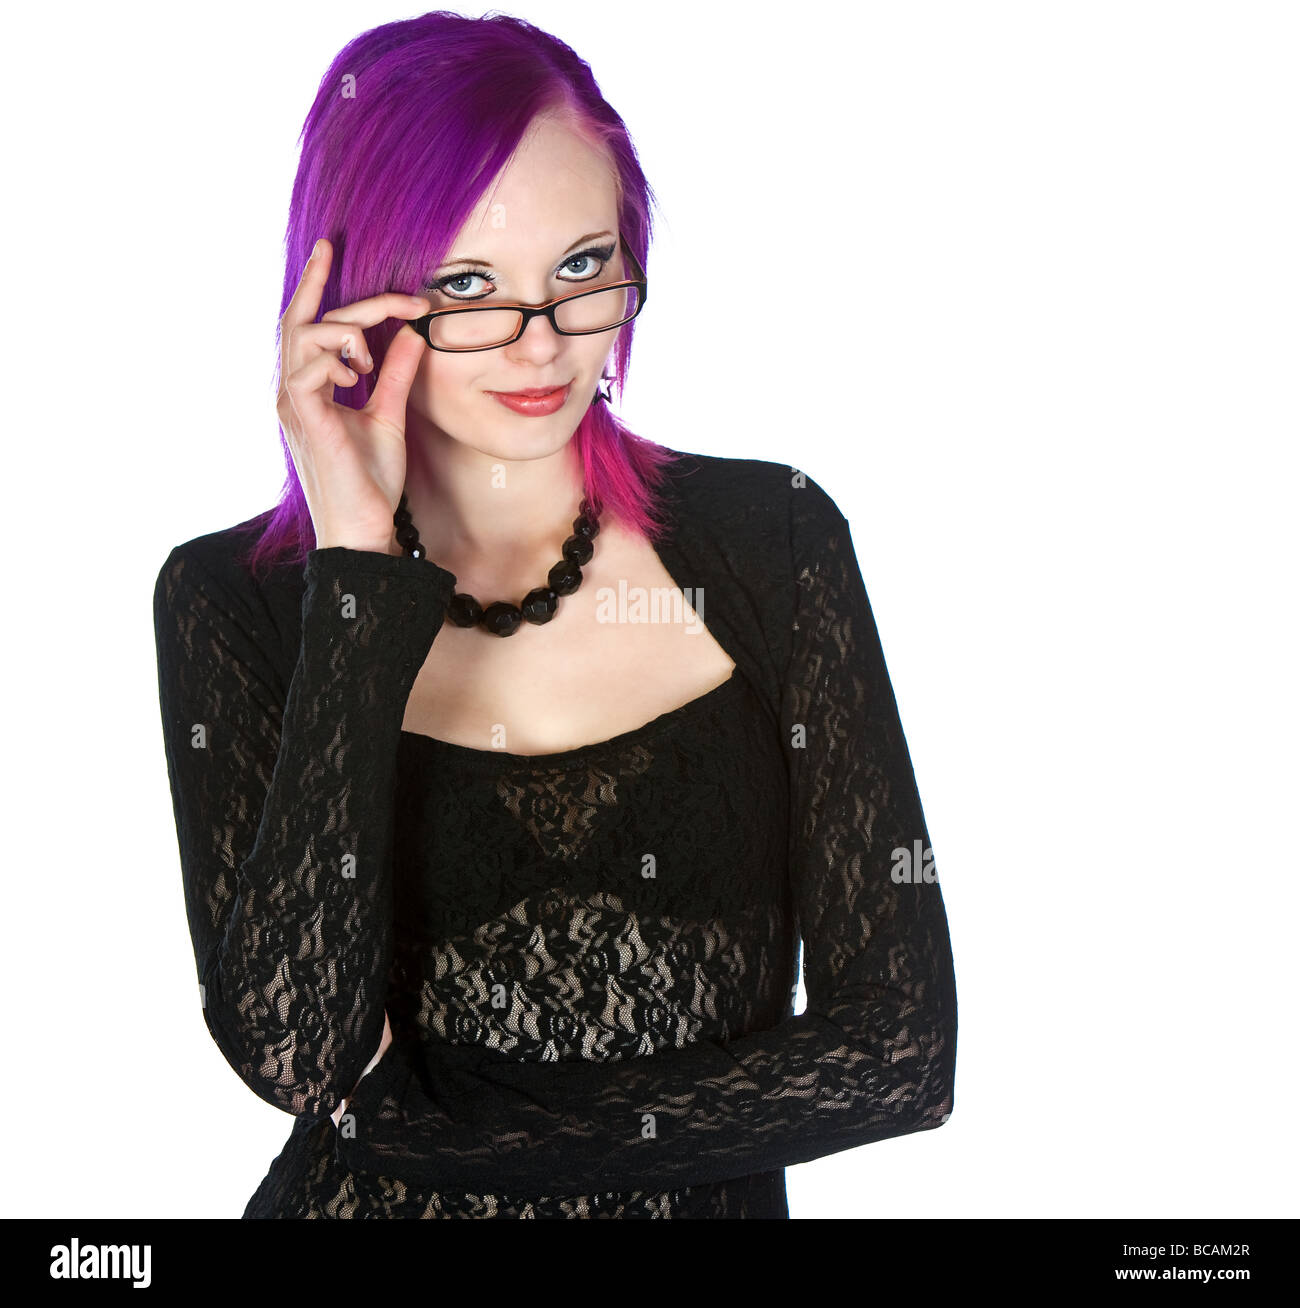 Jolie fille aux cheveux violets avec des lunettes Banque D'Images